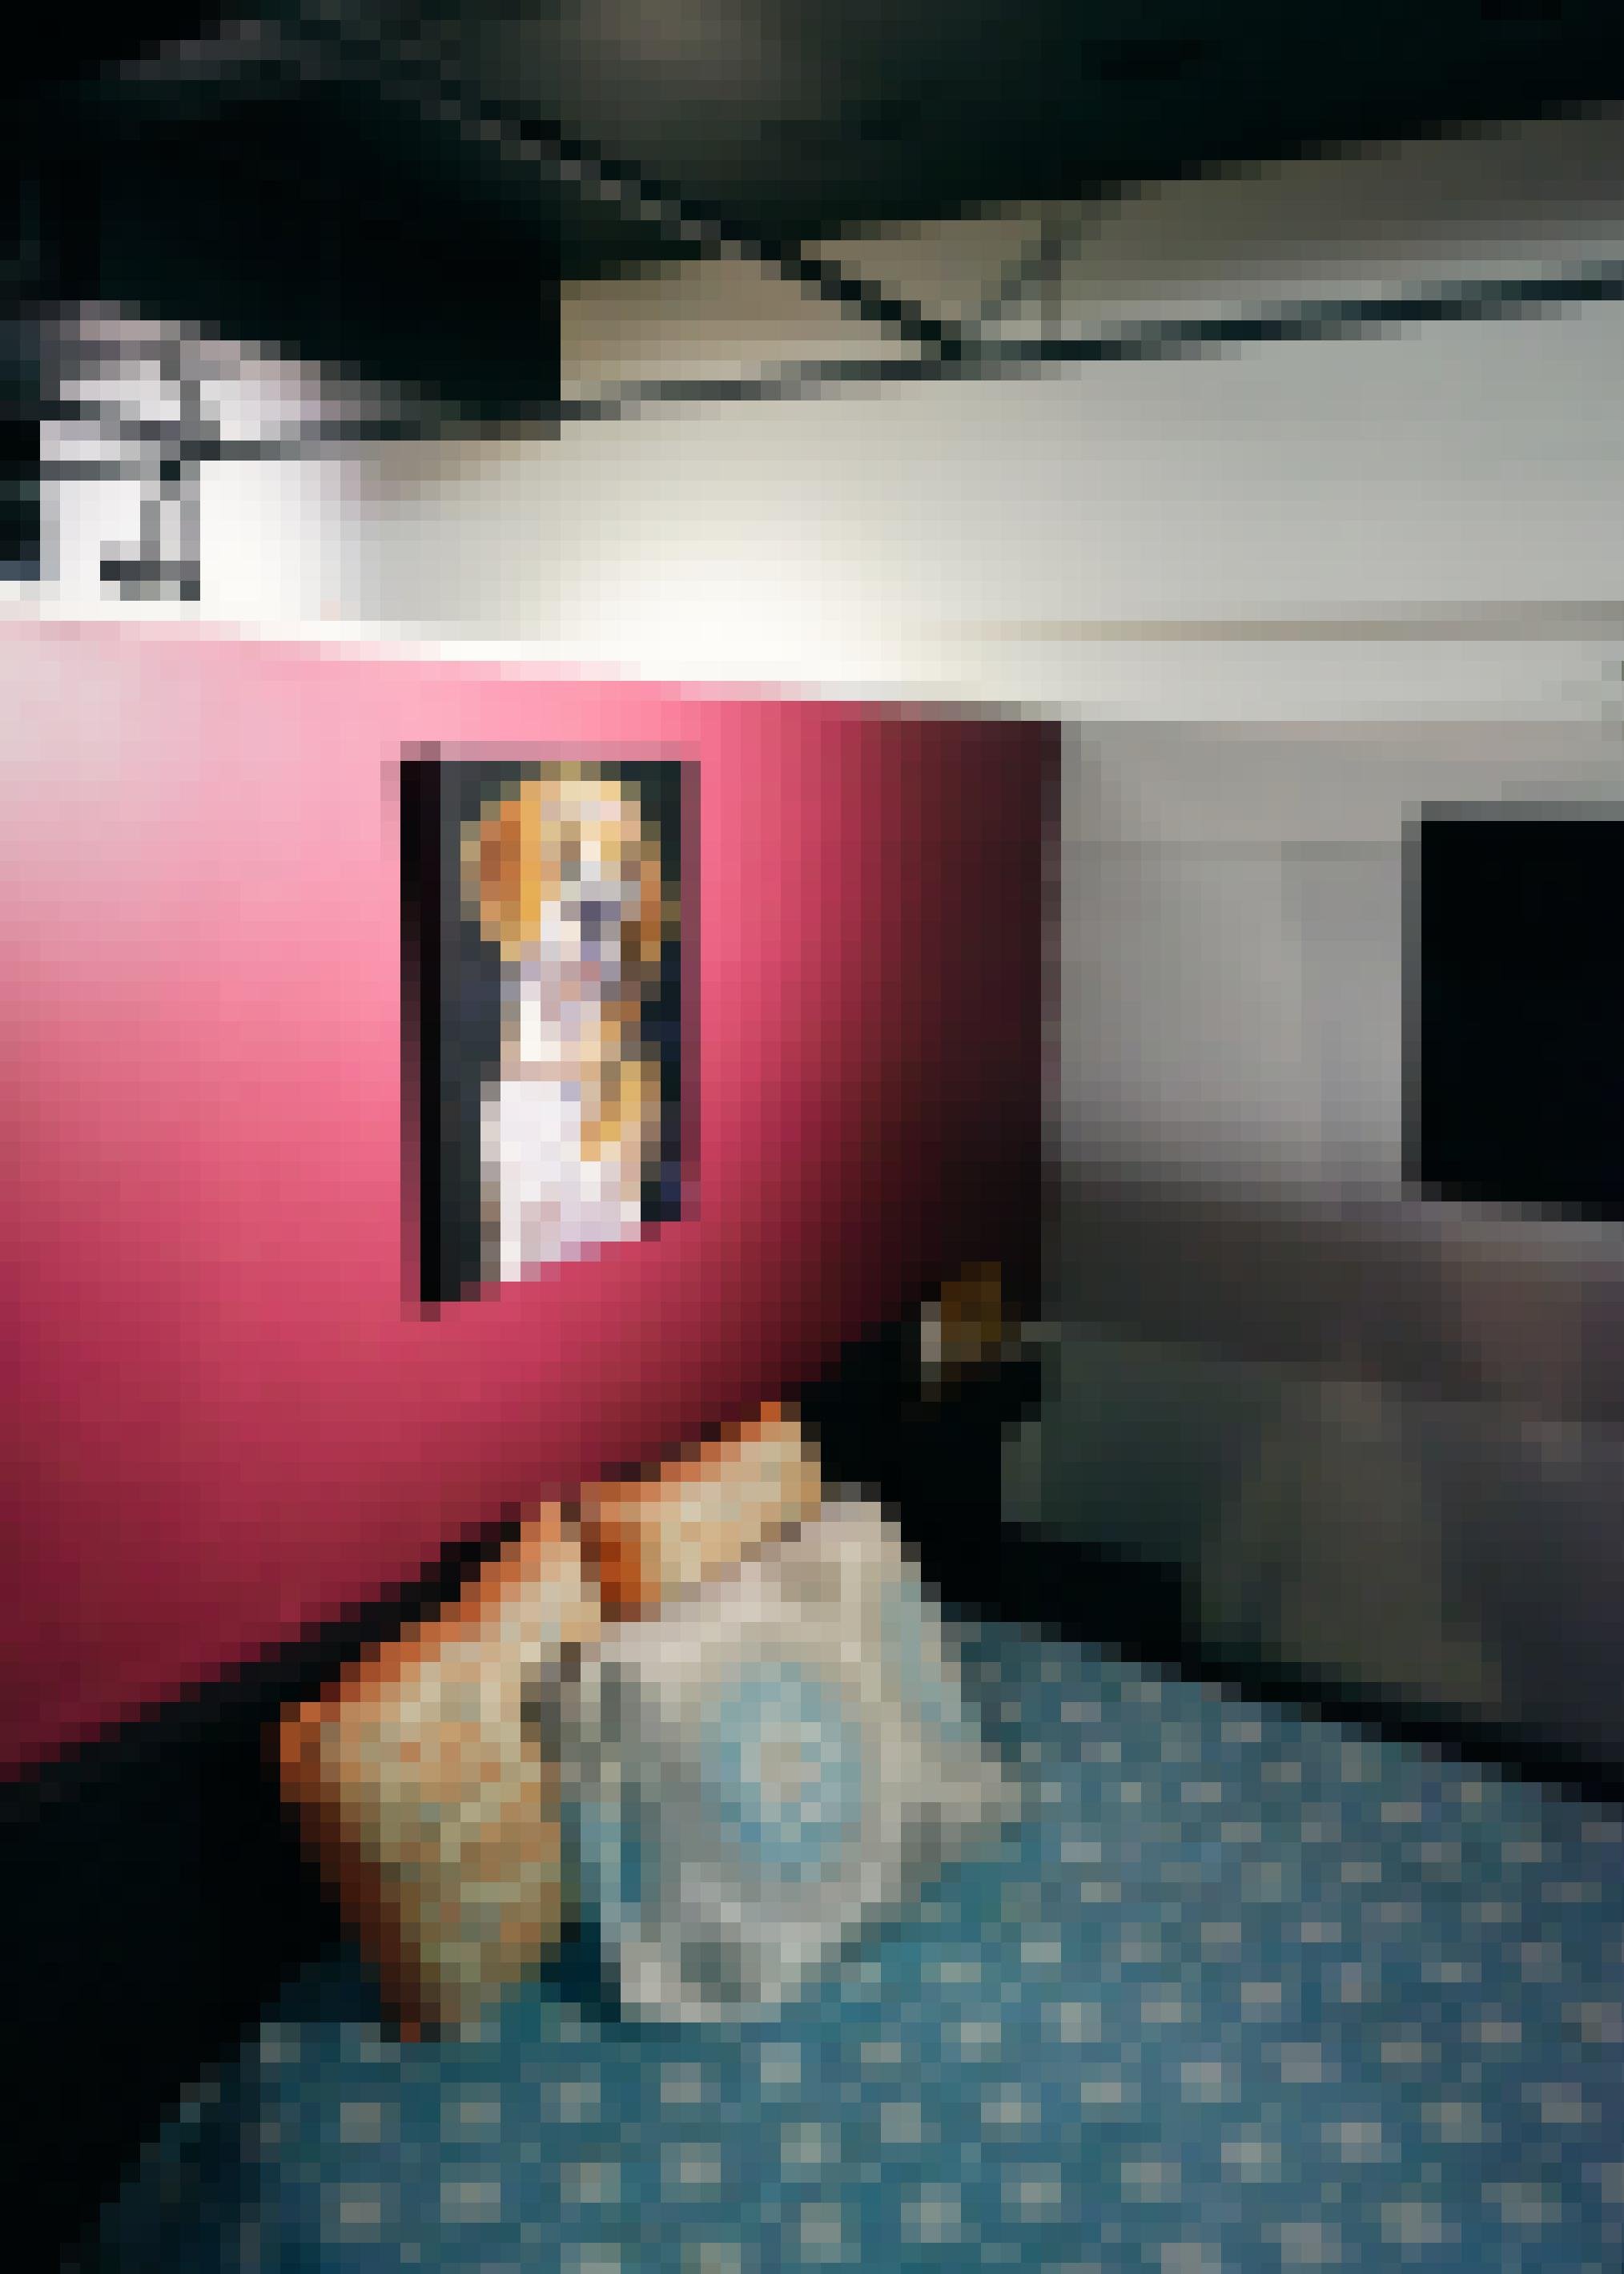 Zu sehen ist ein Hotelzimmer. Über dem Bett hängt das Gemälde eines Hundes.